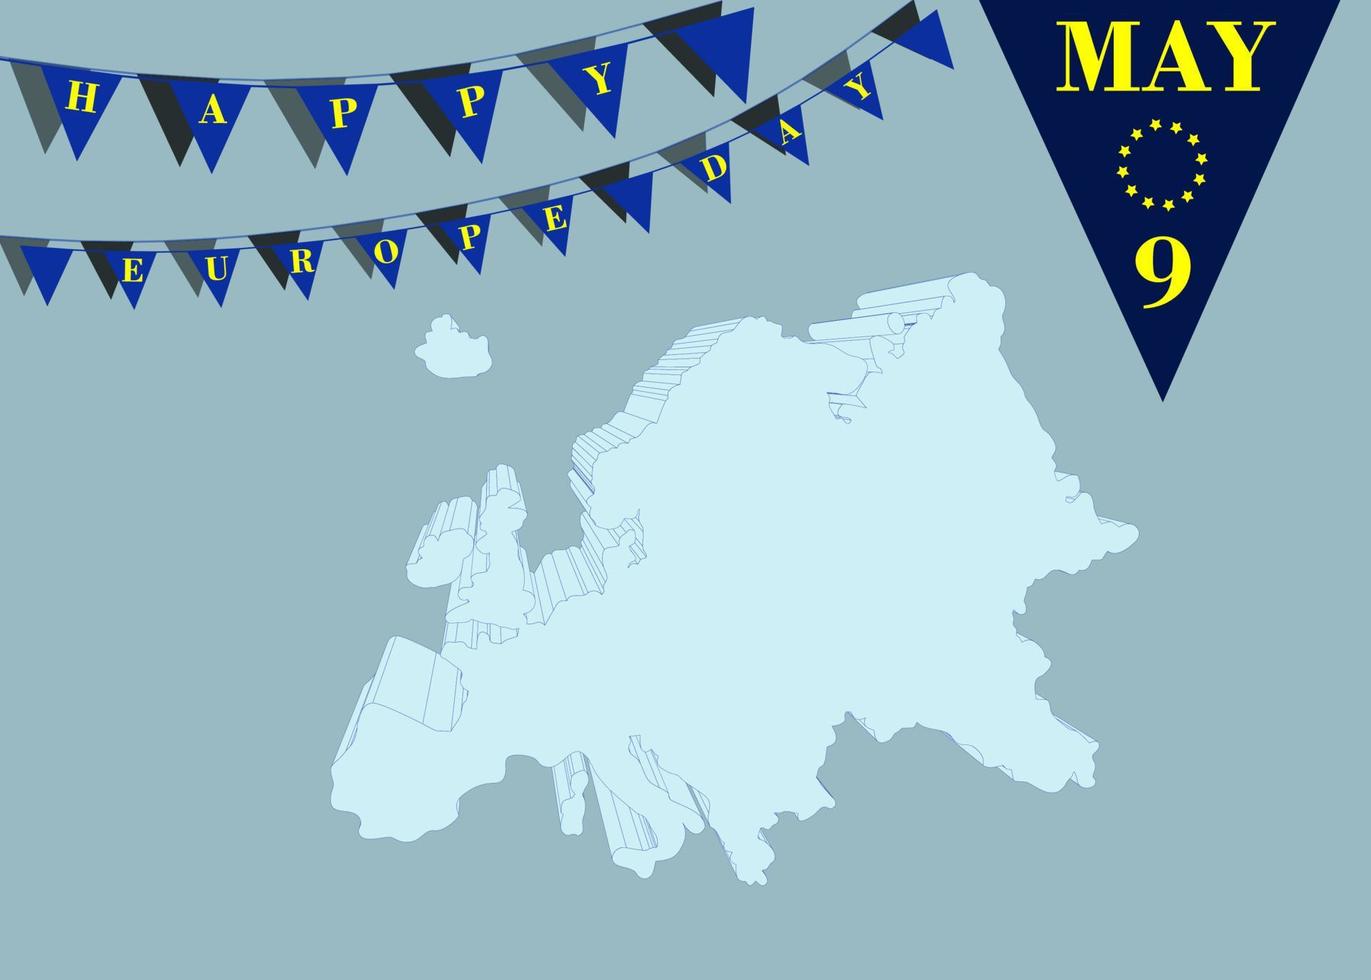 journée de l'europe 9 mai. carte de l'europe un concept de drapeau. conception de fond de vecteur, bannière, affiche ou carte avec drapeaux et lettrage. la paix et l'unité en europe célébrées le 9 mai par l'union européenne. vecteur